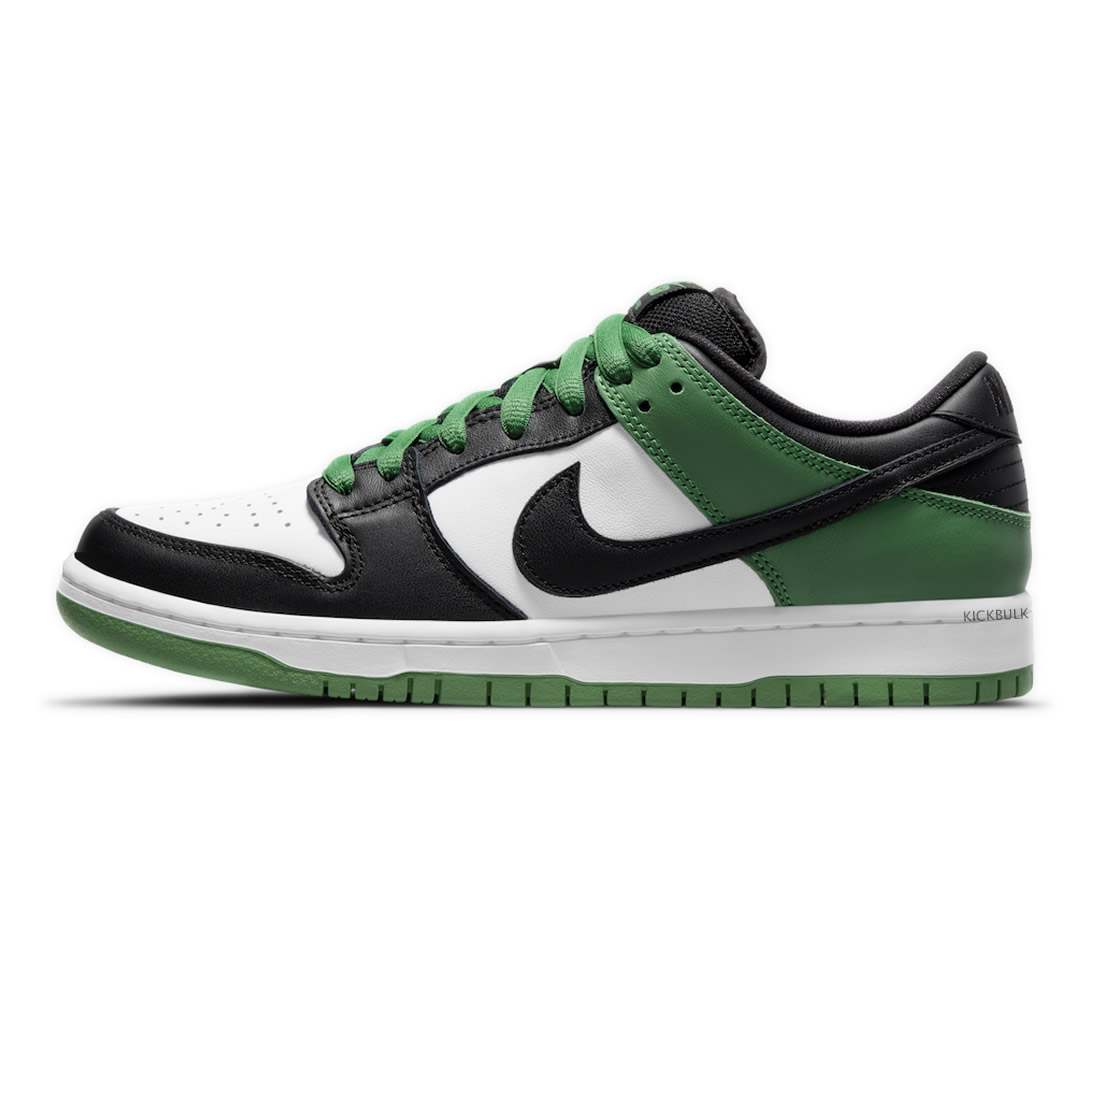 Nike Sb Dunk Low Classic Green Bq6817 302 1 - www.kickbulk.co